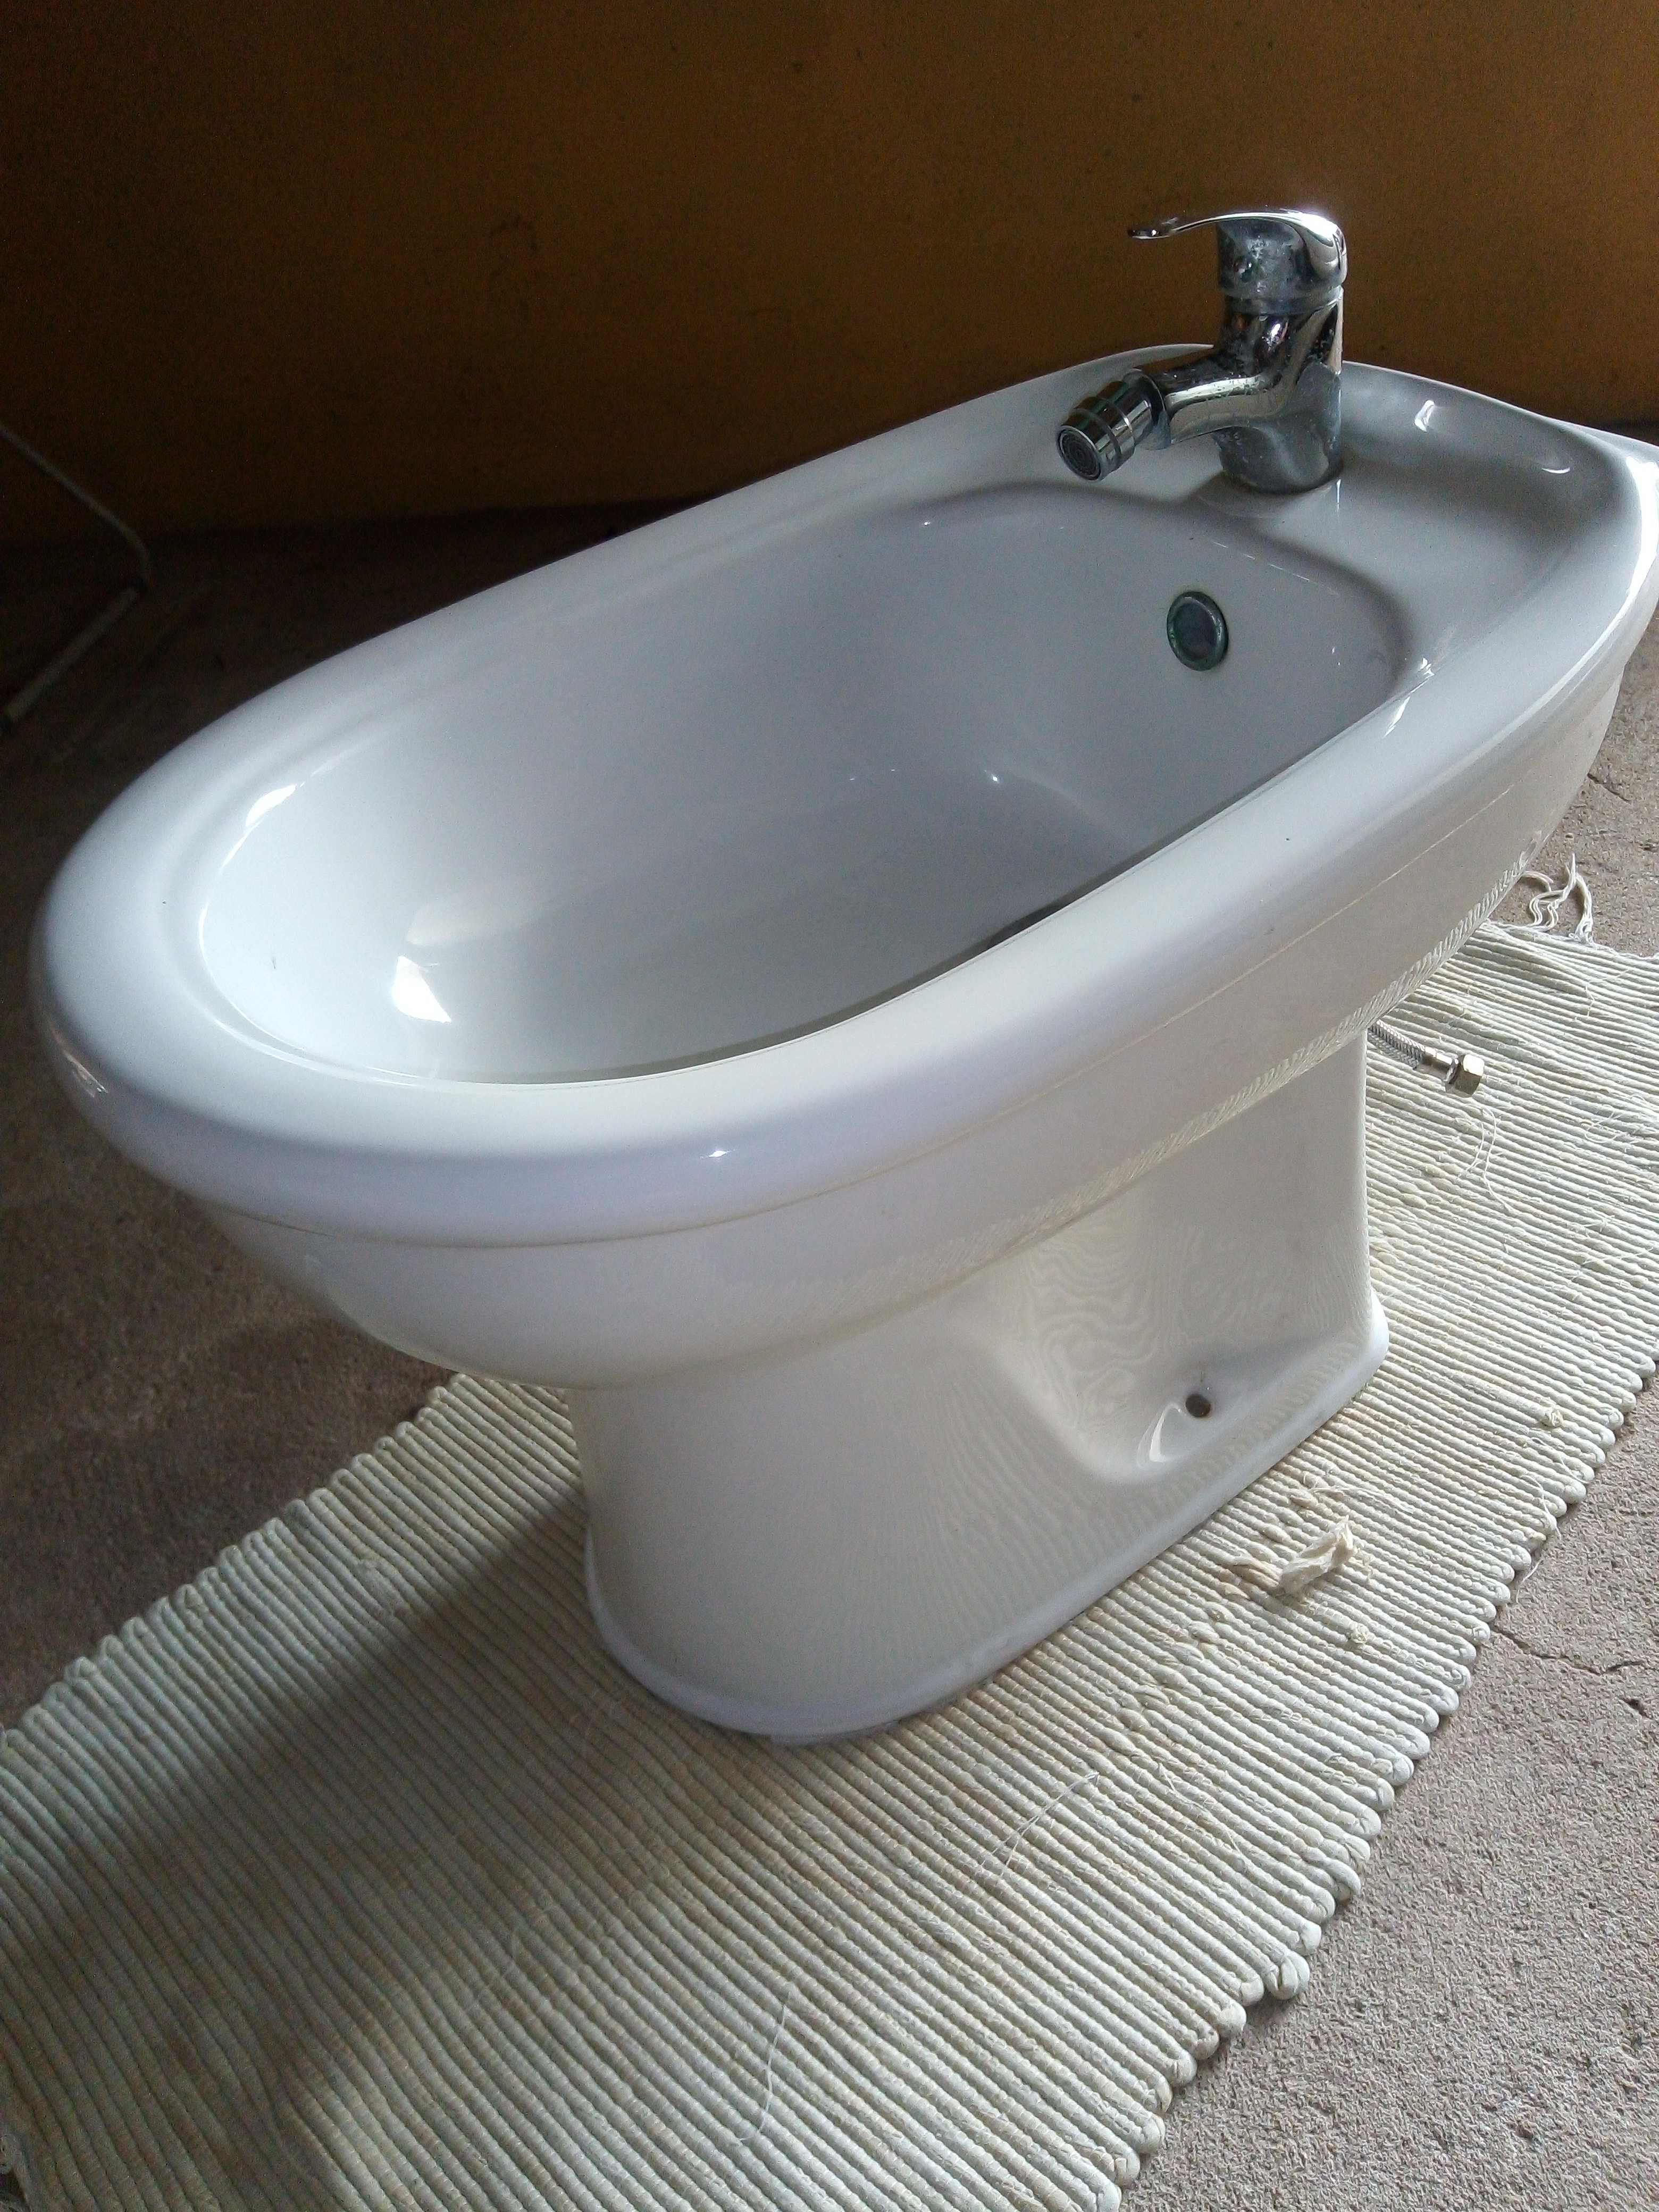 Louças sanitárias usadas (lavatório, sanita e bidé)